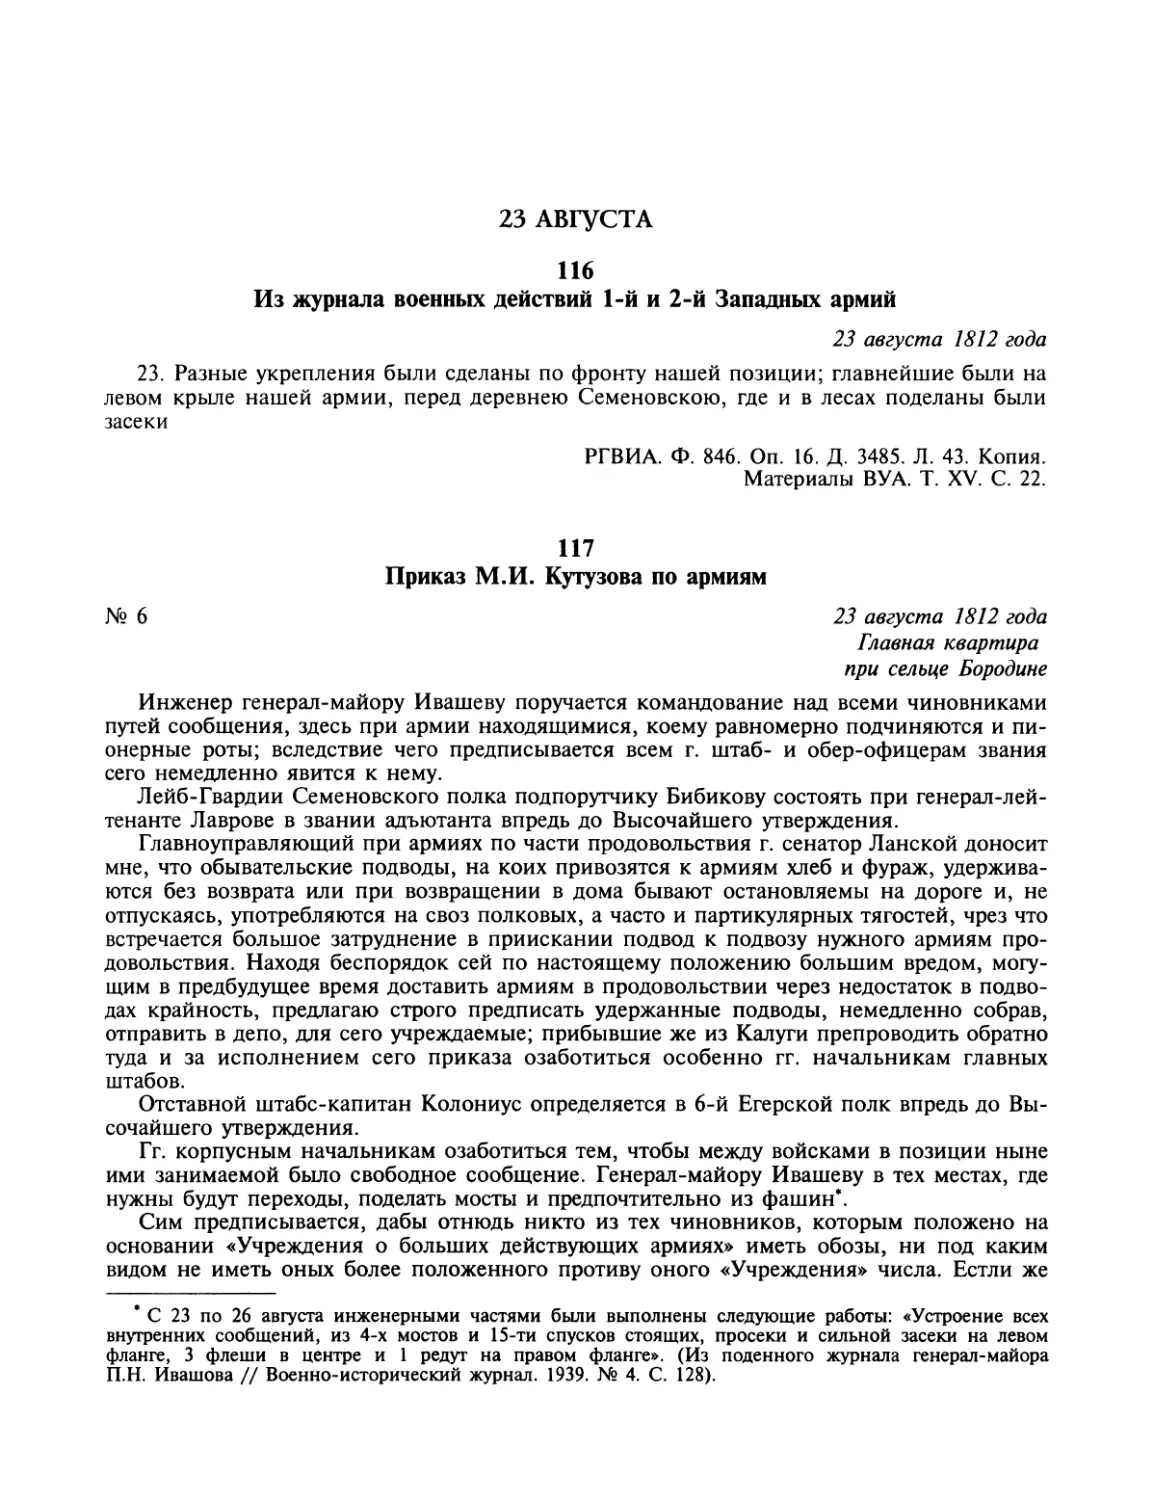 23 августа
Приказ М.И. Кутузова по армиям